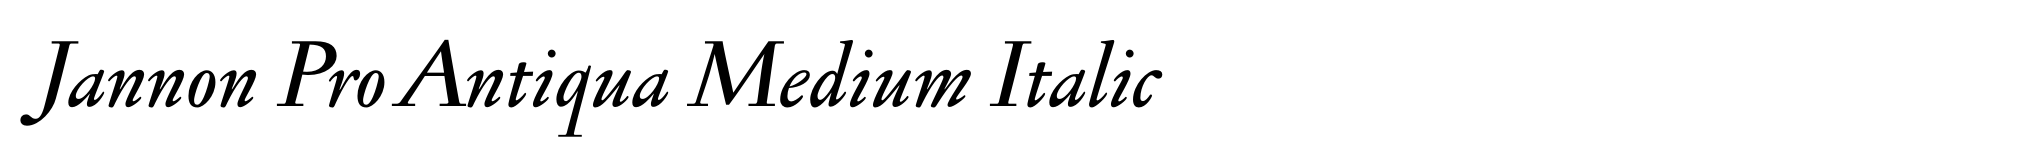 Jannon Pro Antiqua Medium Italic image